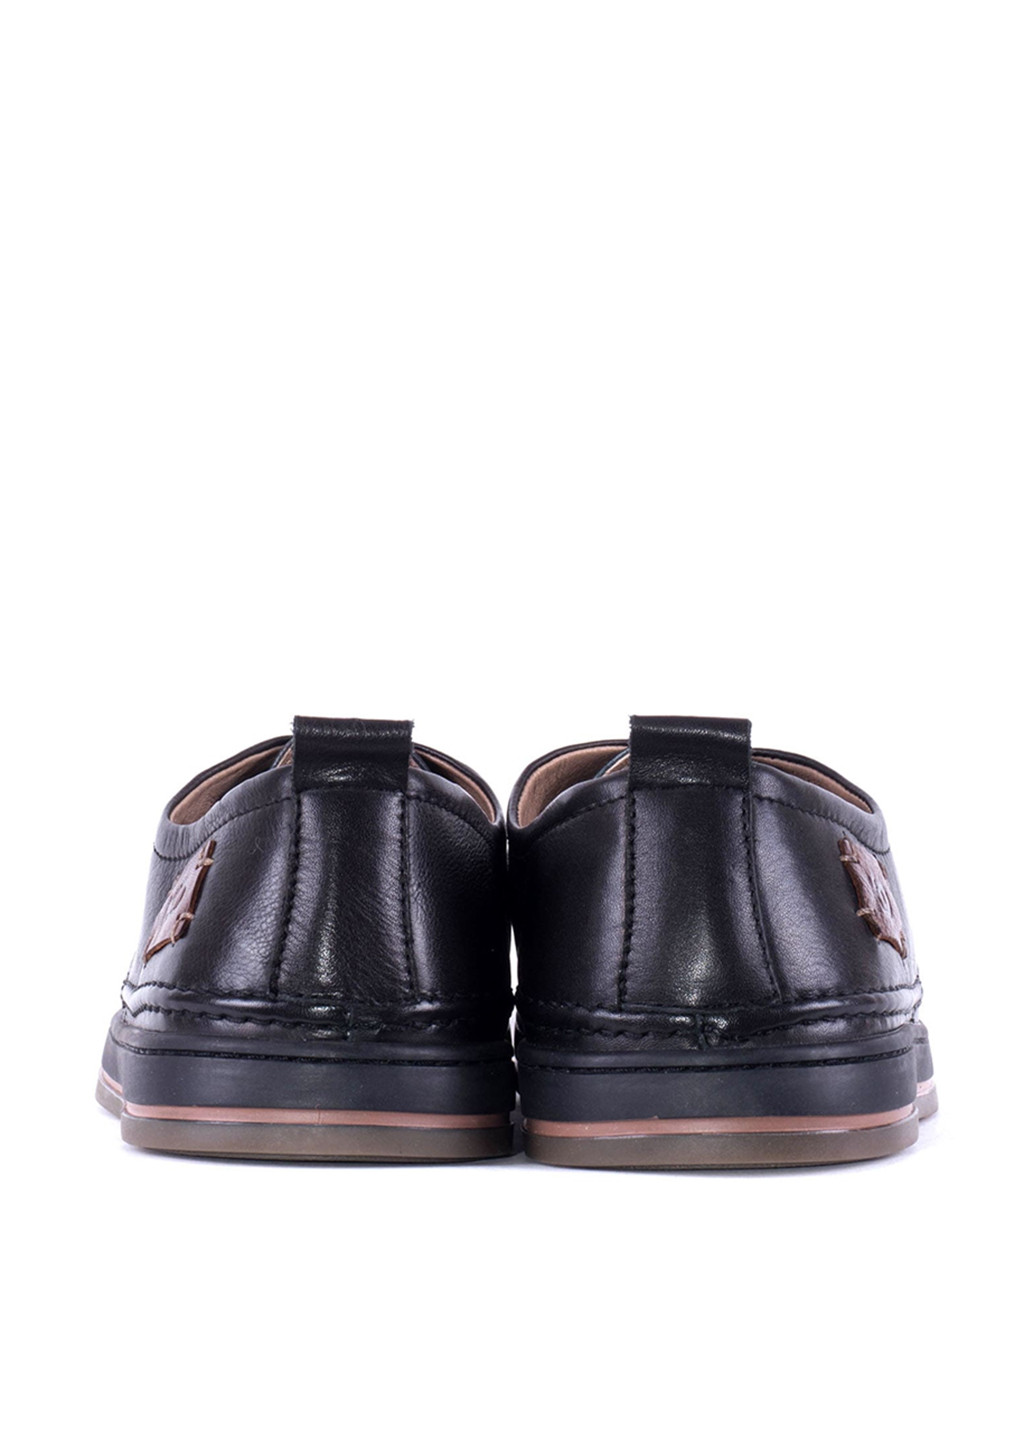 Черные кэжуал туфли Kadar на шнурках